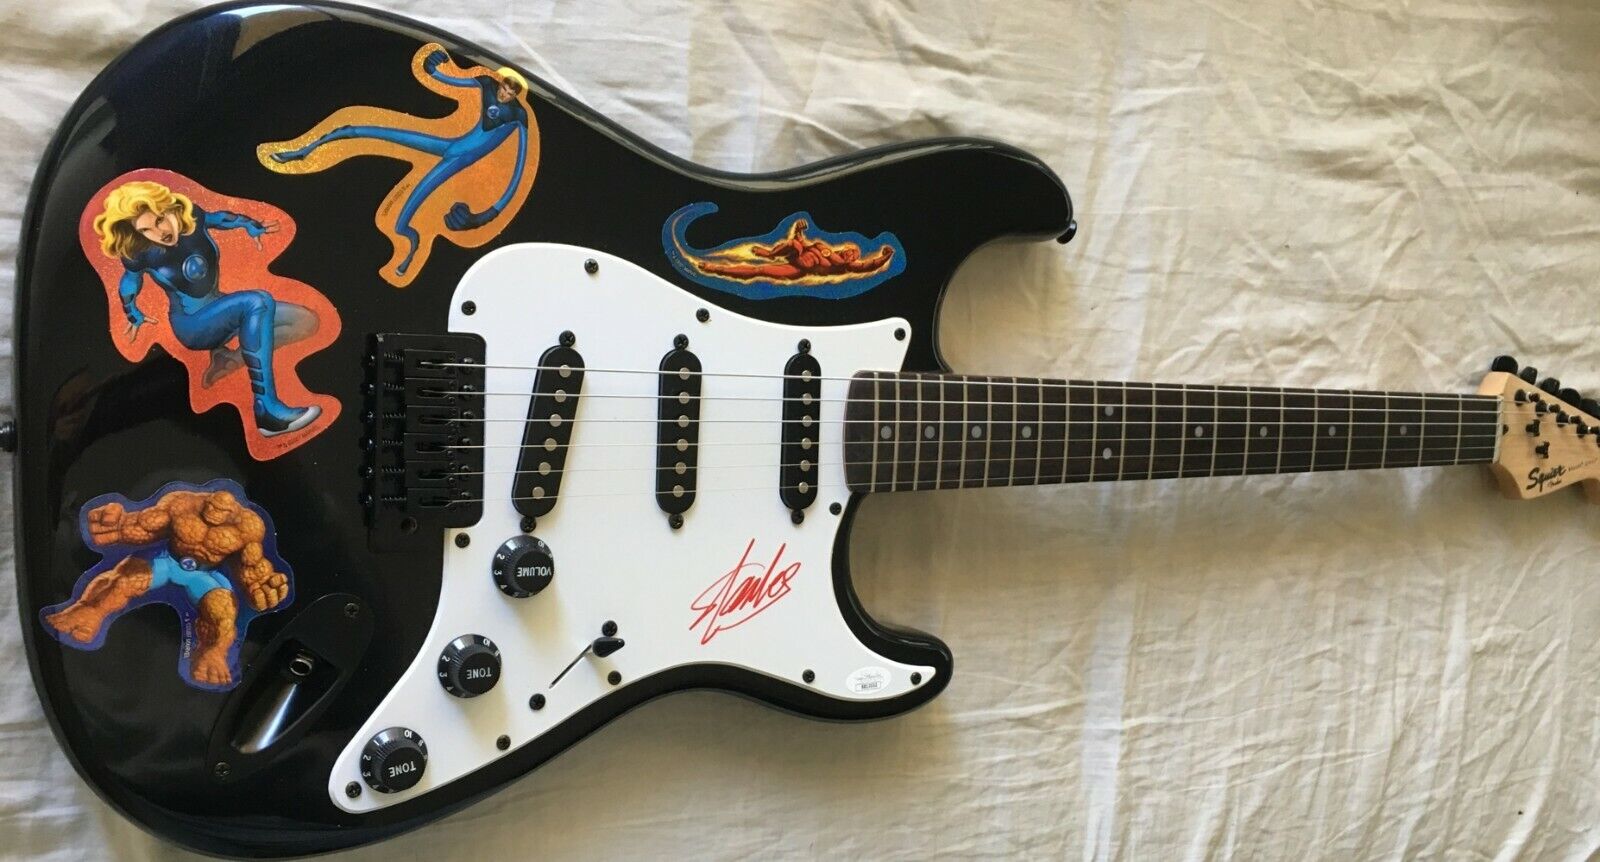 Stan Lee autographed signed Fantastic 4 Fender Squier Bullet electric guitar JSA